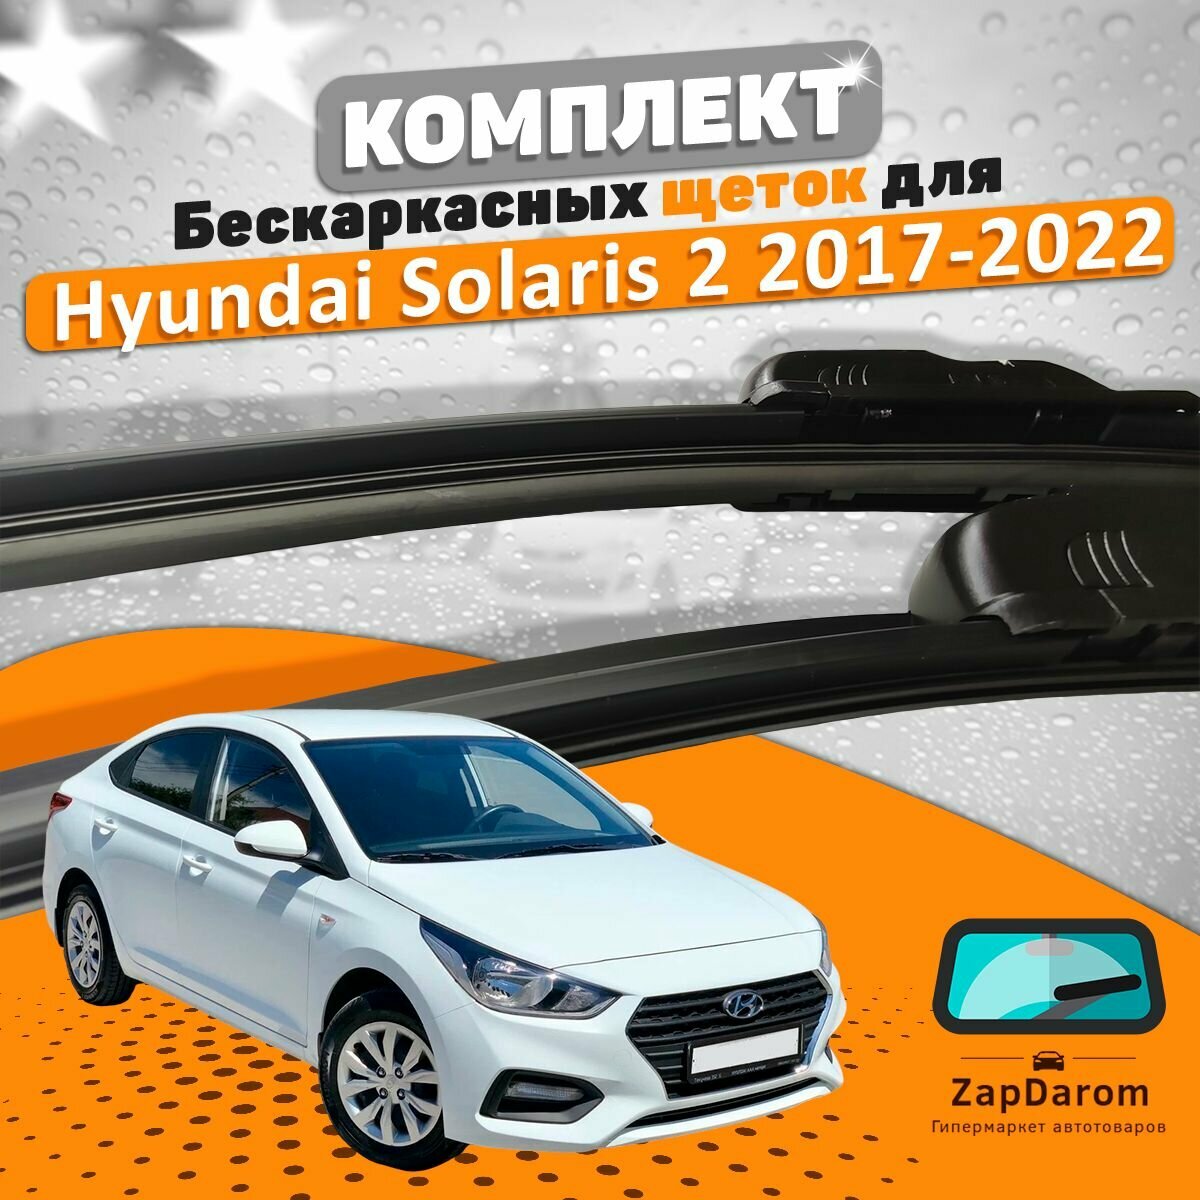 Щетки комплект Hyundai Solaris 2 поколения 2017-2022 (600 и 400 мм) / Дворники Хундай Солярис 2